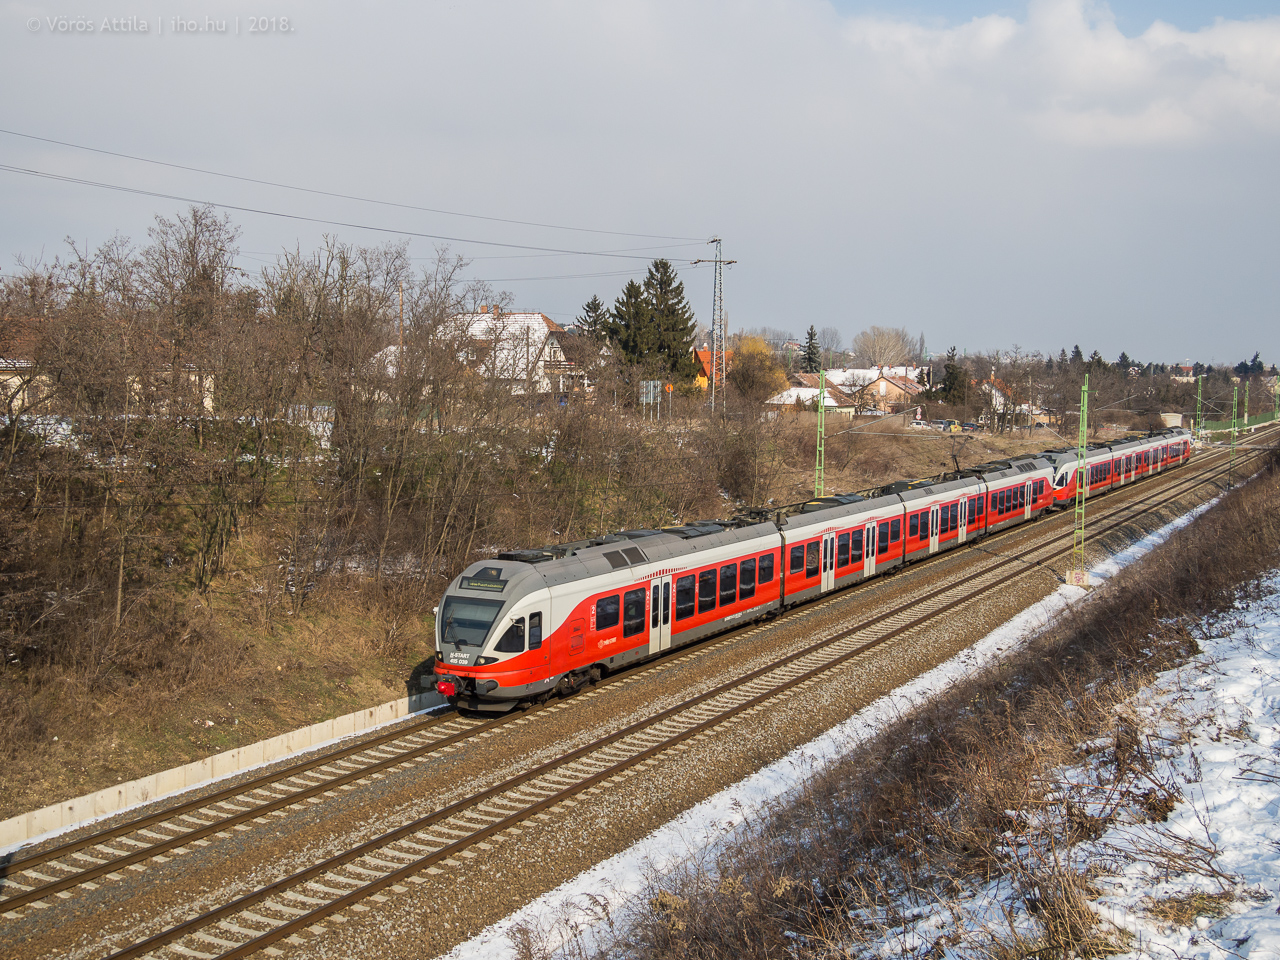 Érd alsó és Tárnok között robog egy S42-es személyvonat Dunaújváros felé a 30a vonalon (képek: Vörös Attila)